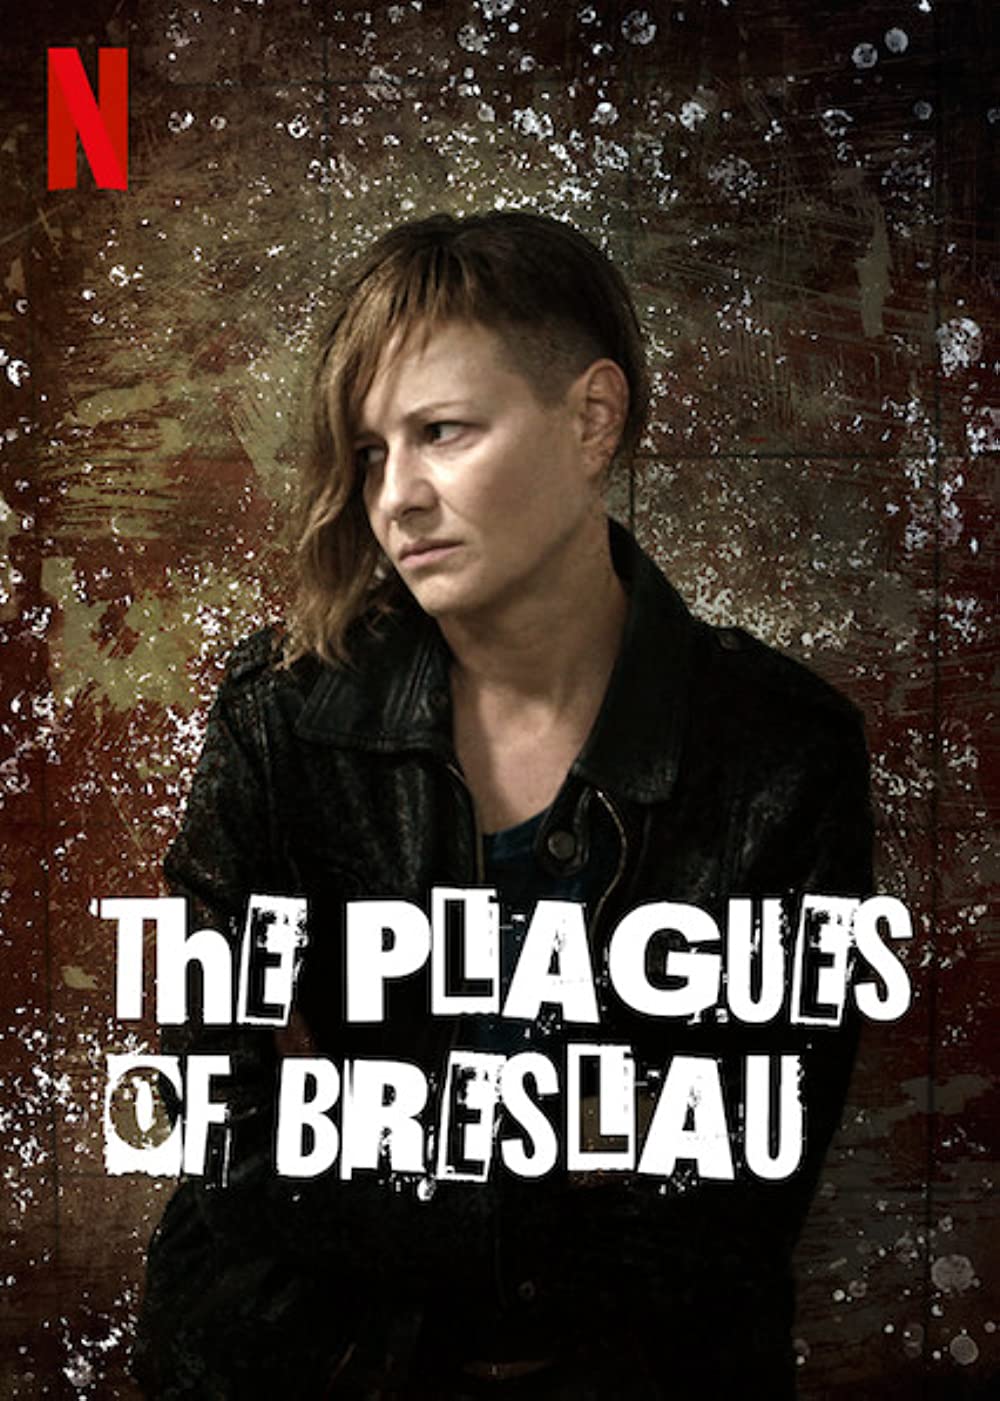 Filmbeschreibung zu Plagues of Breslau